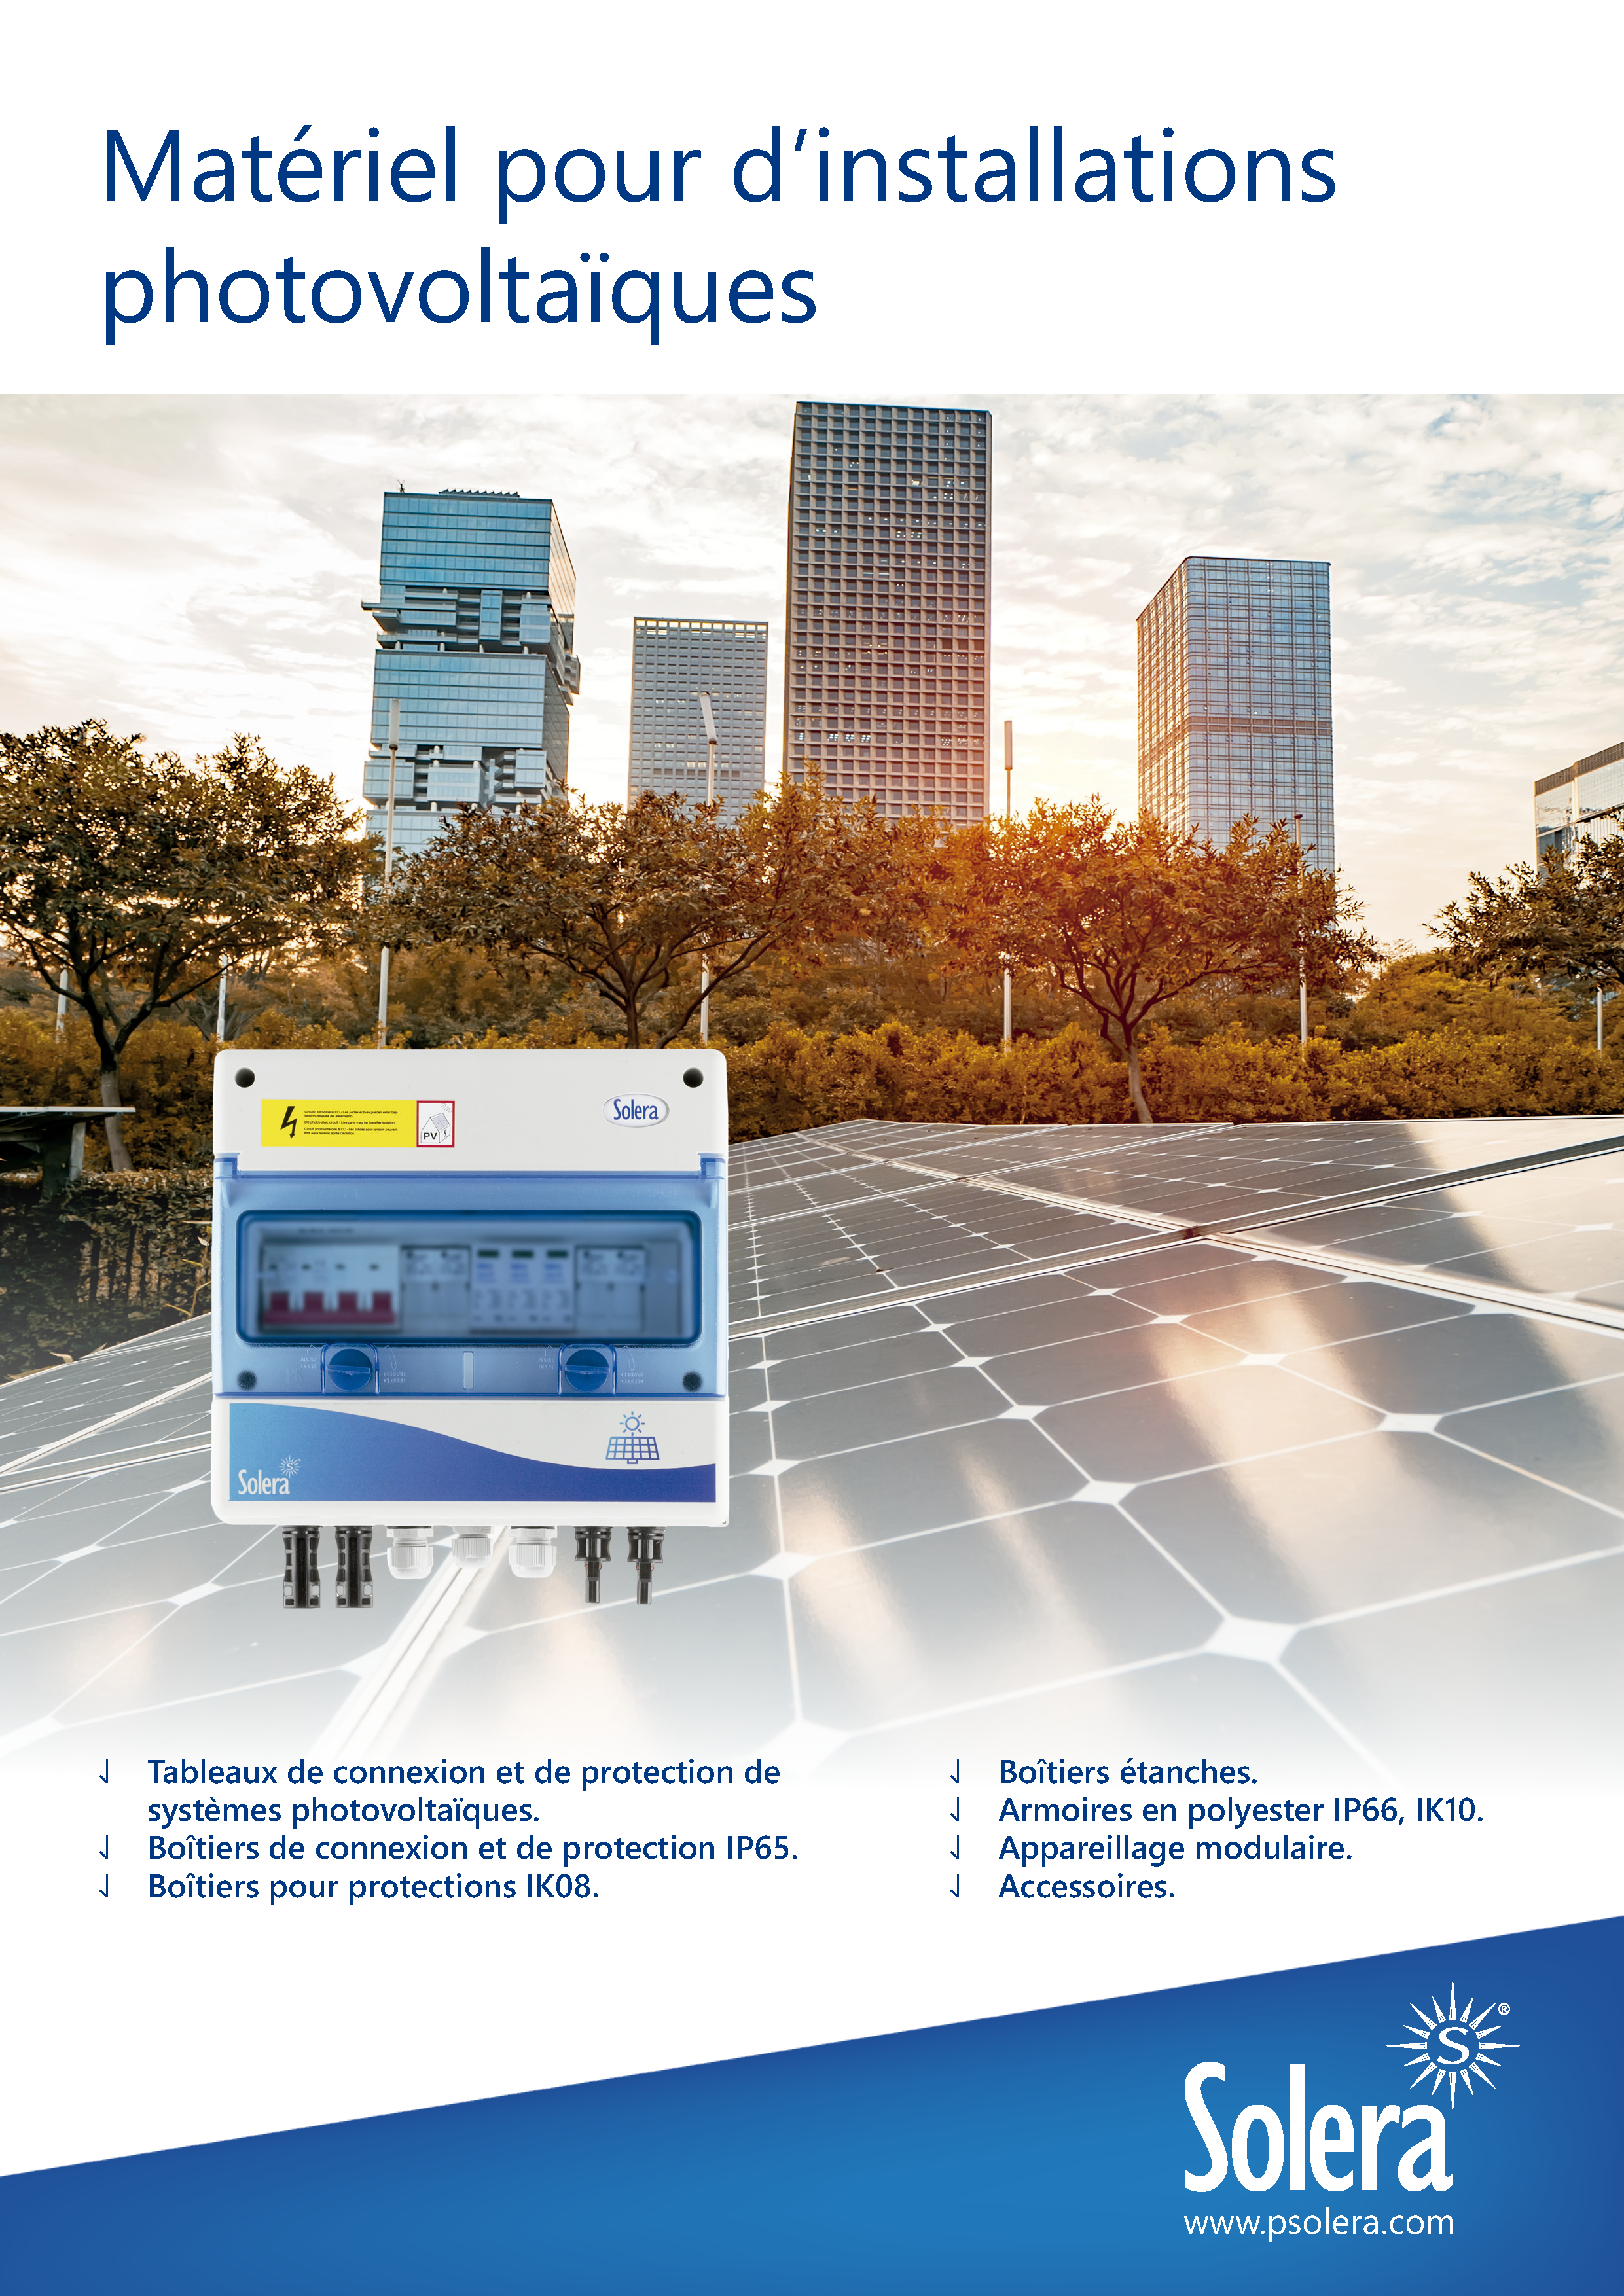 Matériel pour d’installations photovoltaïques